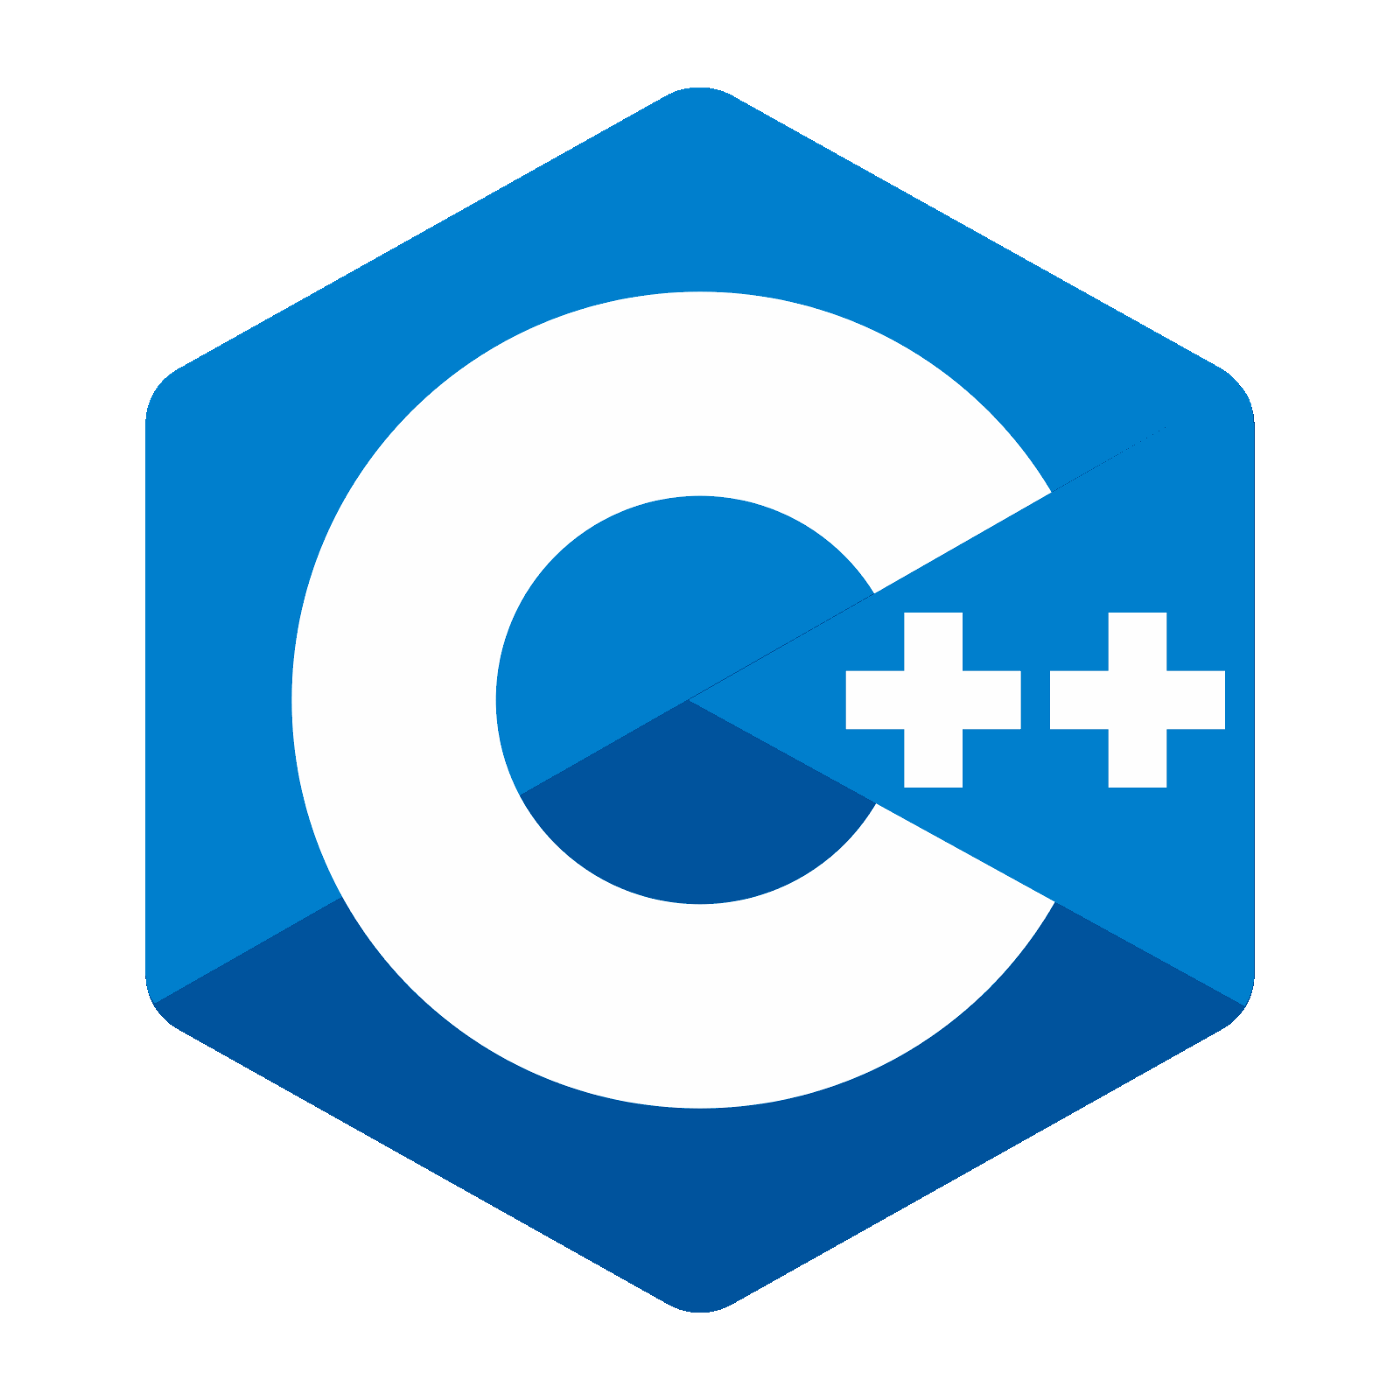 c++-programming-logo